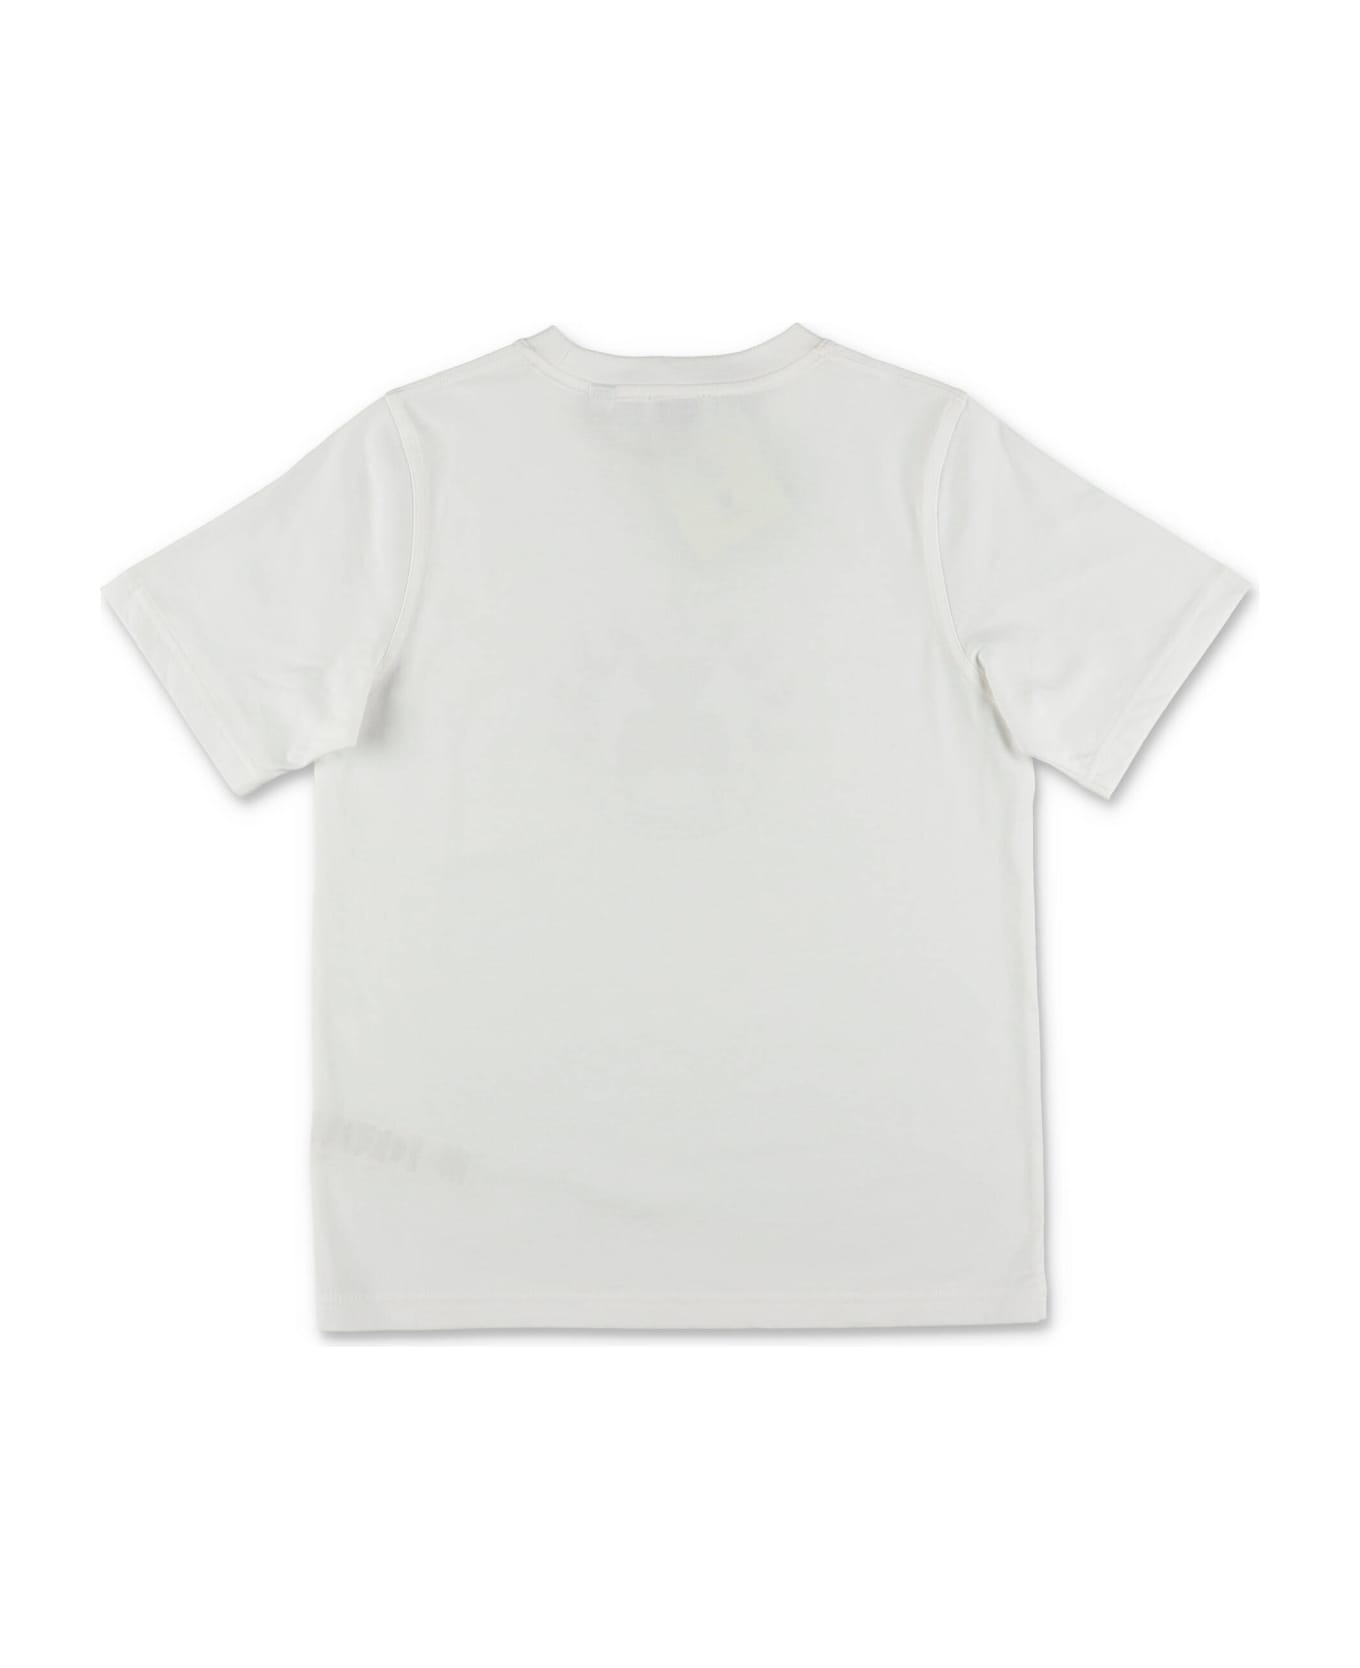 Burberry T-shirt Bianca In Jersey Di Cotone Bambino - Bianco